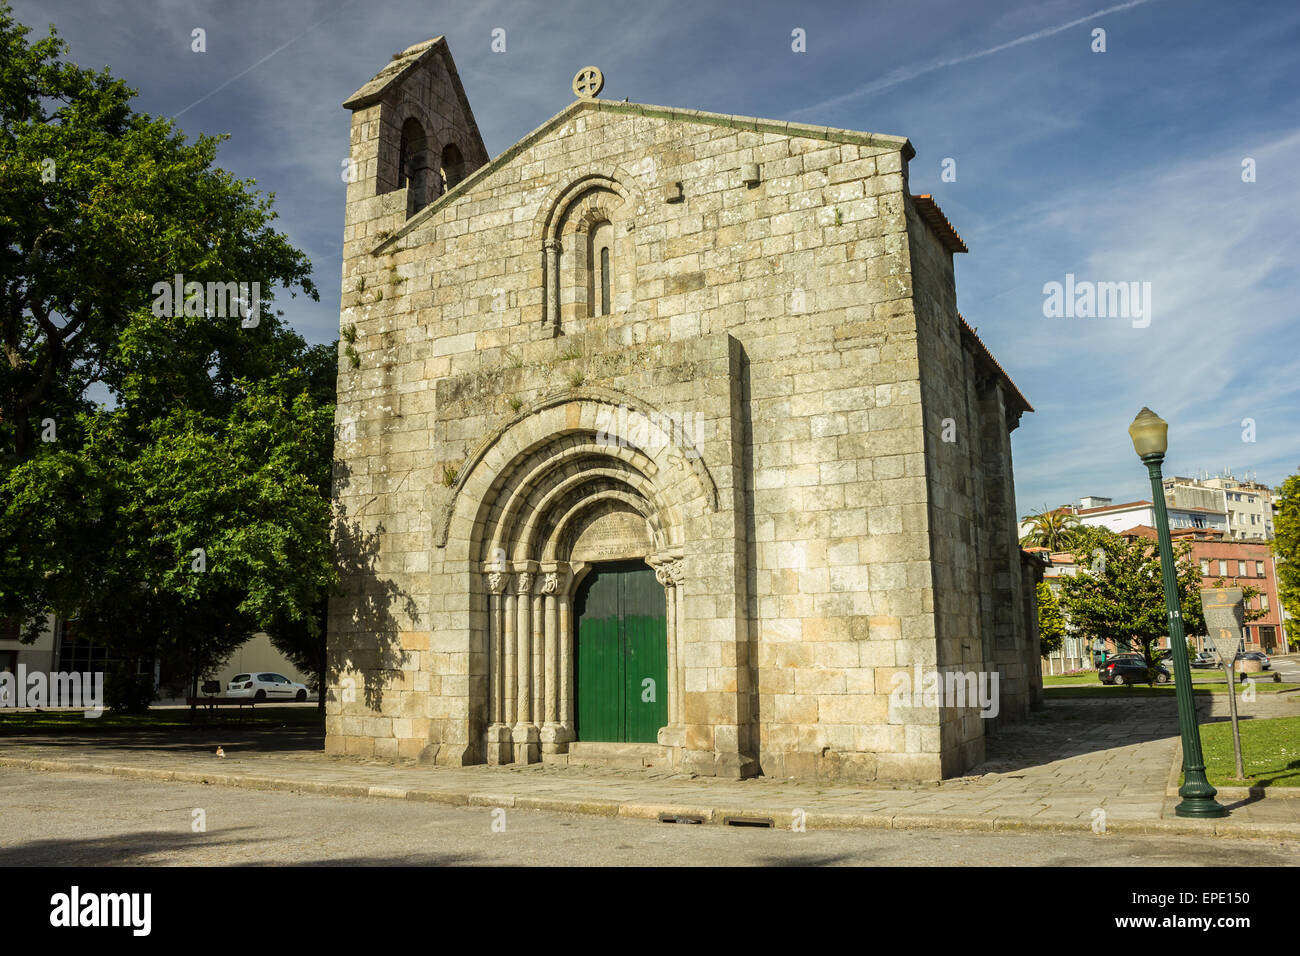 Igreja de São Martinho da Cedofeita, Porto, Portugal Stock Photo - Alamy